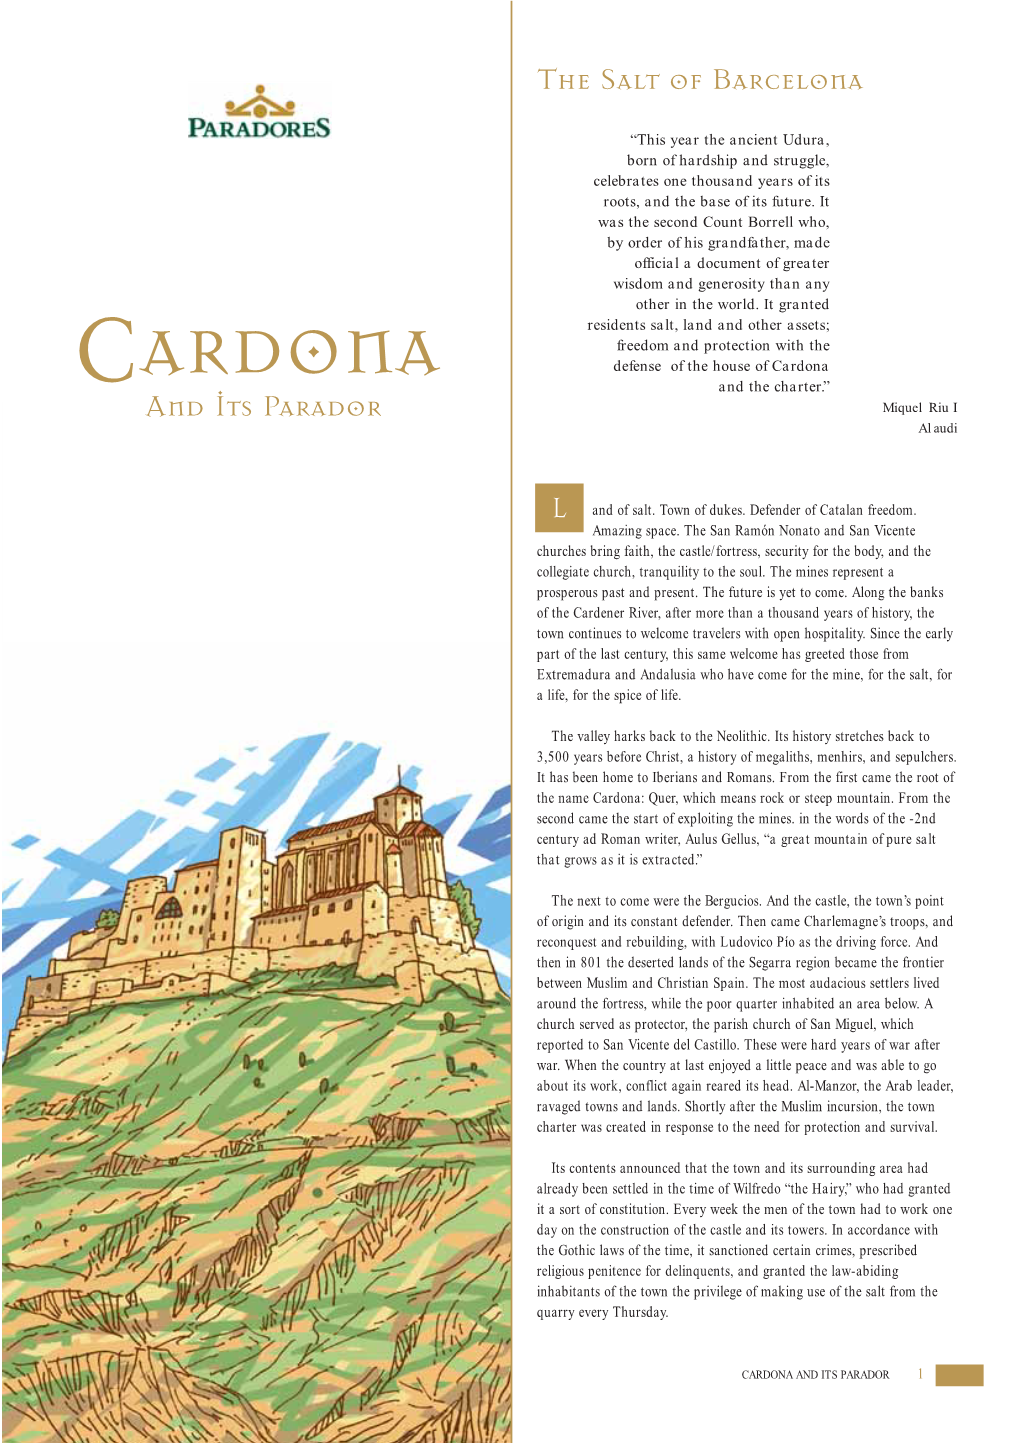 ARDONA Defense of the House of Cardona C and the Charter.” and Its Parador Miquel Riu I Alaudi